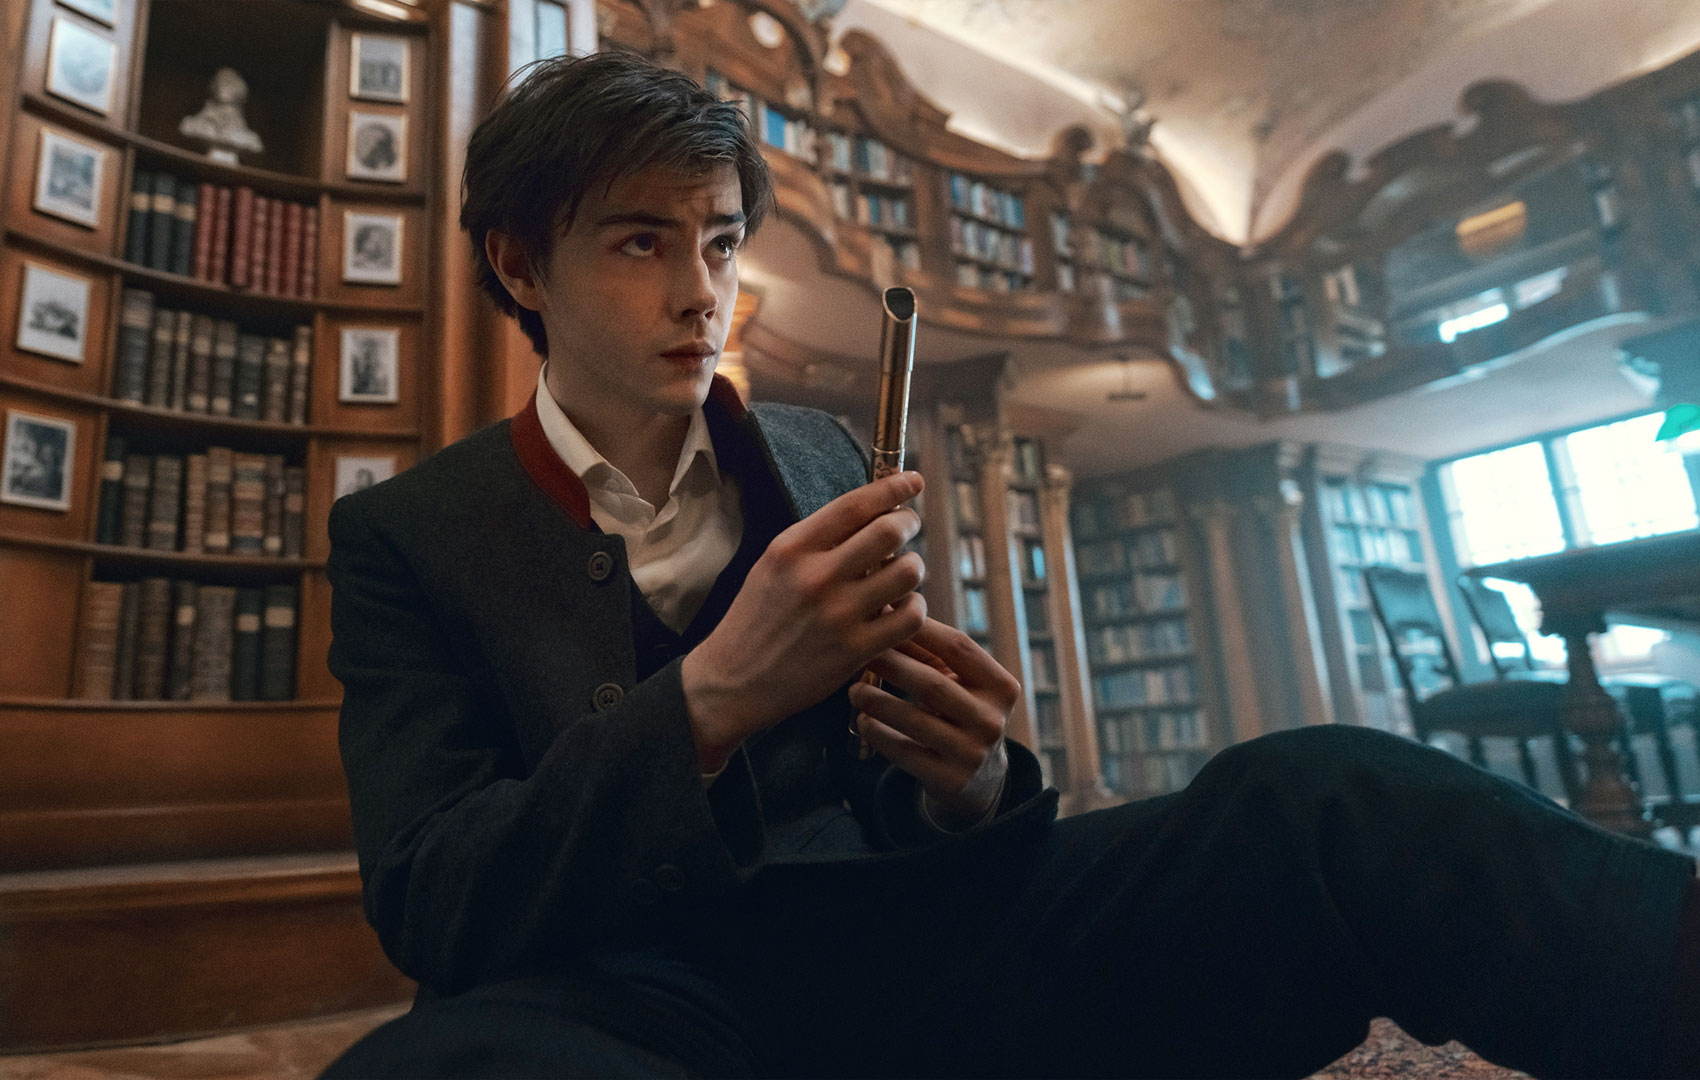 Ein Teenager in Schuluniform sitzt in einer Bibliothek auf dem Boden. Er blickt nach oben. In der Hand hat er eine kleine goldene Flöte.